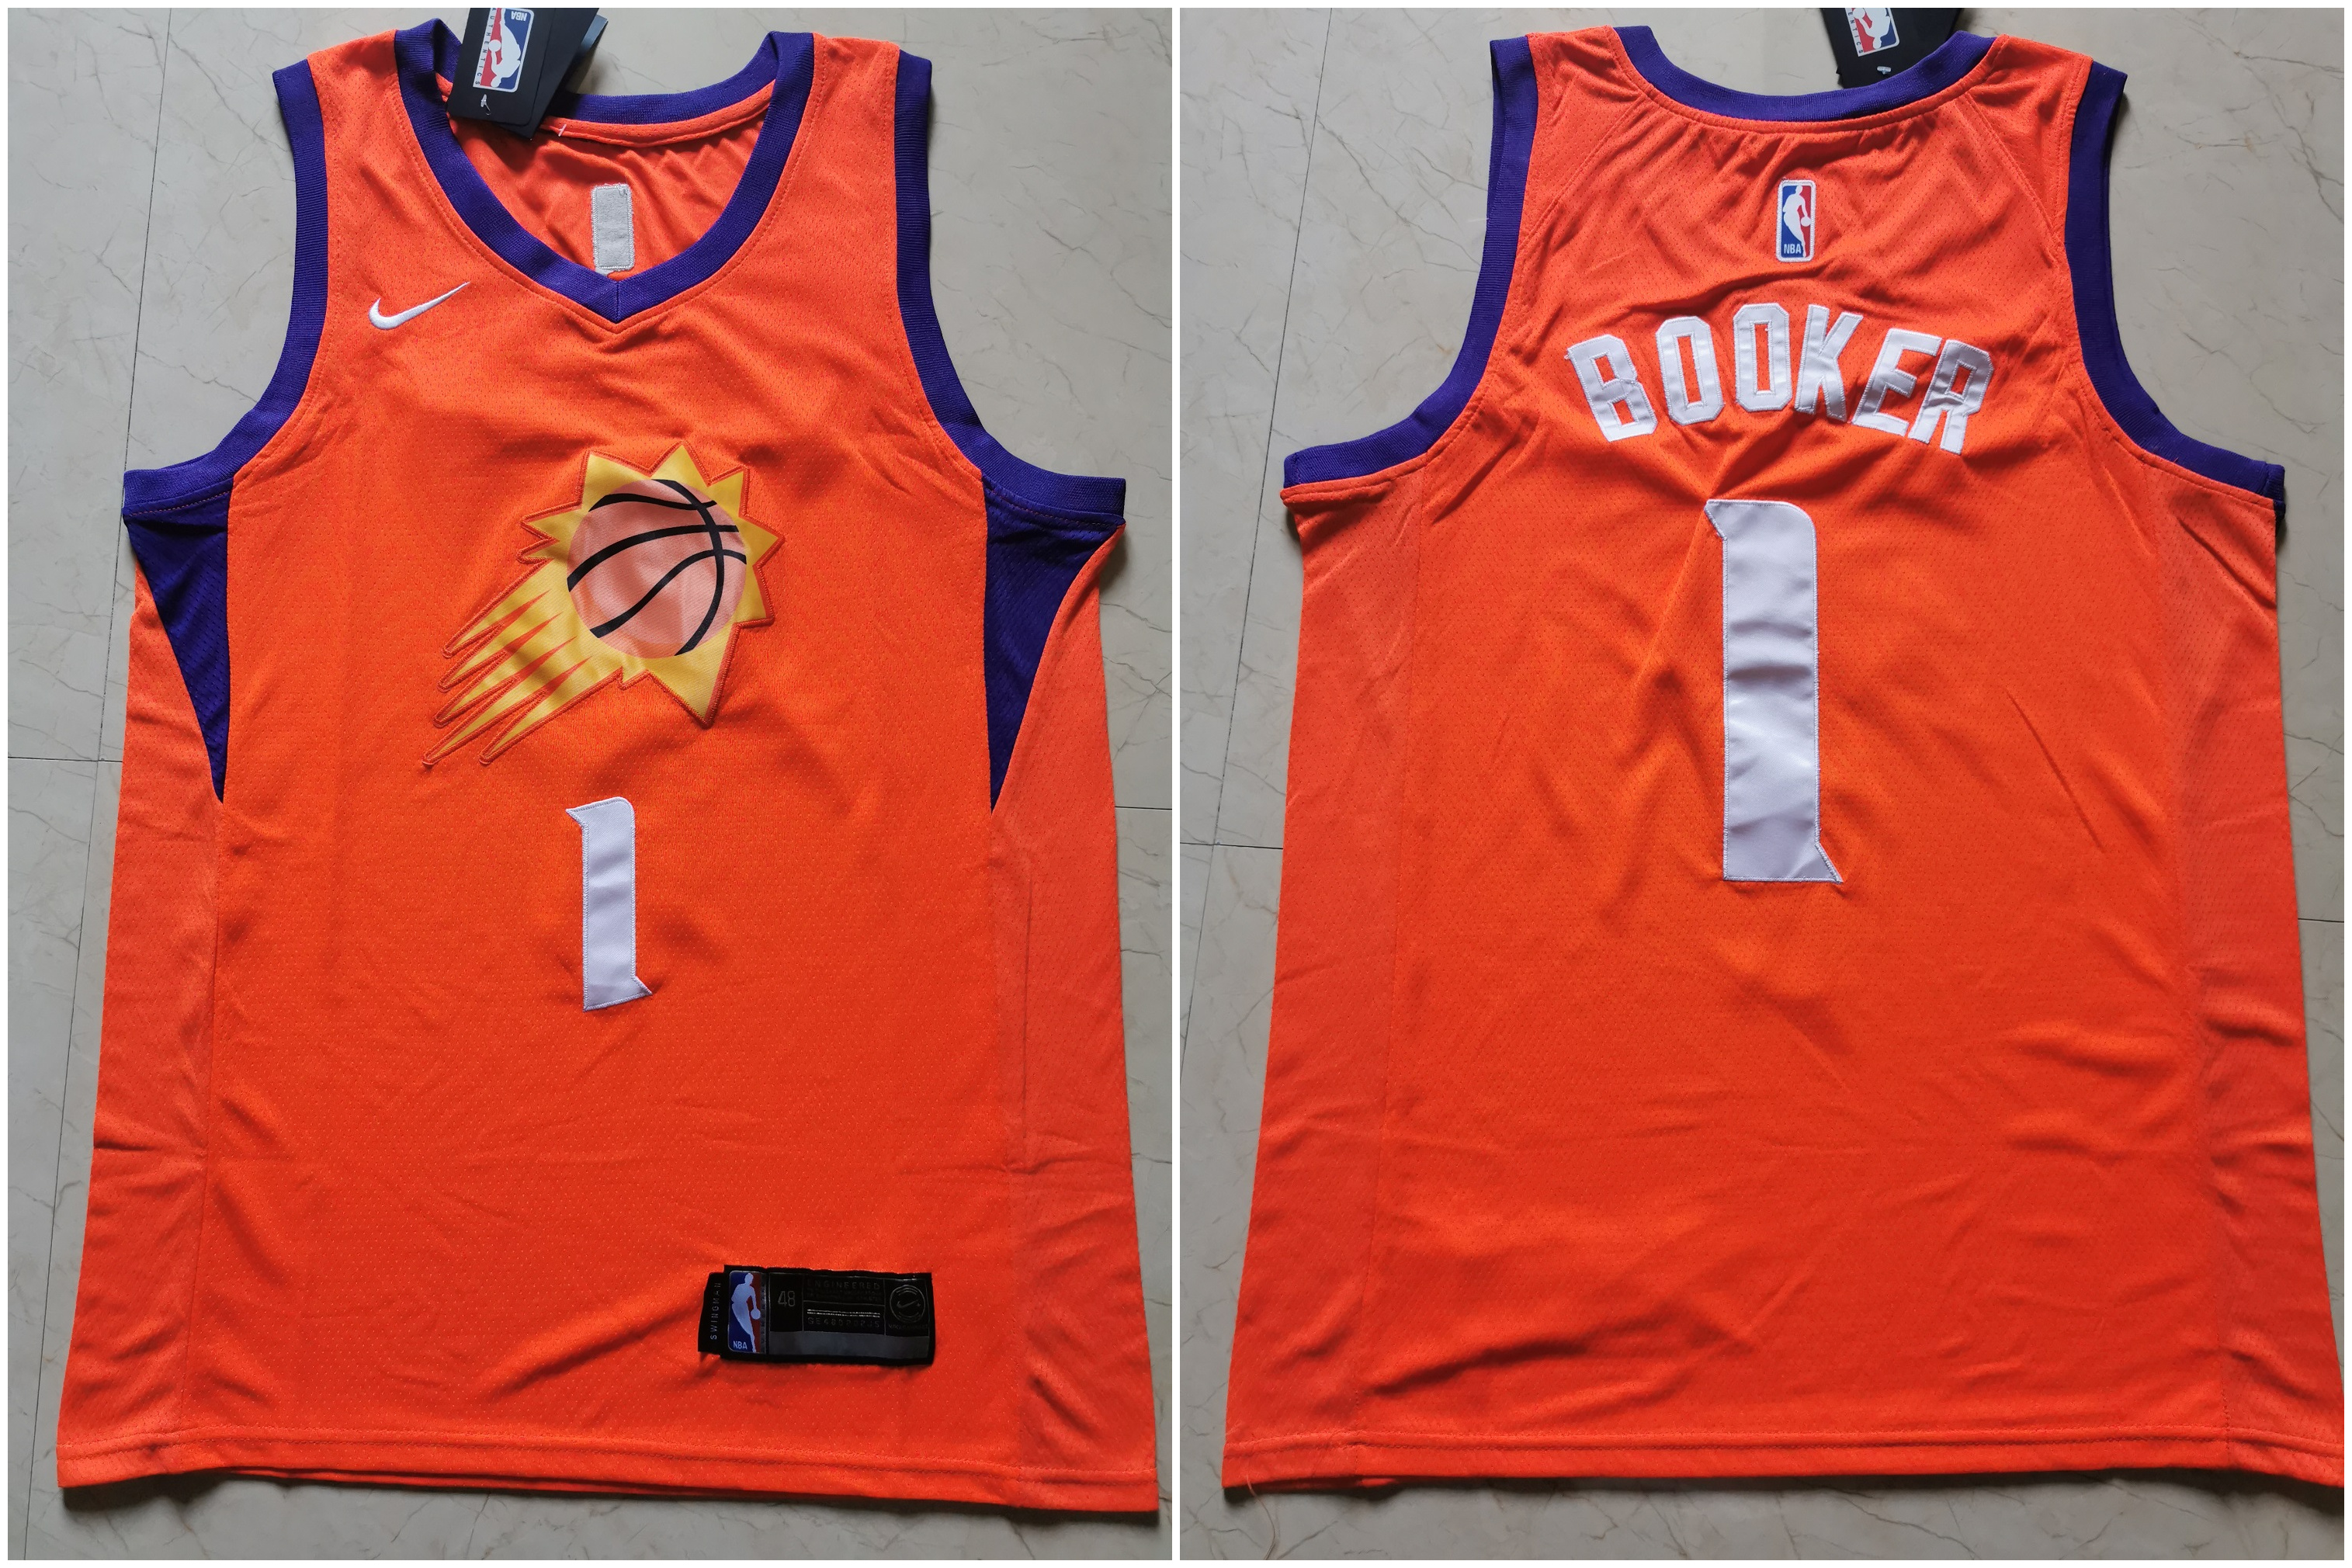 Suns 1 Devin Booker Orange Nike Swingman Jersey